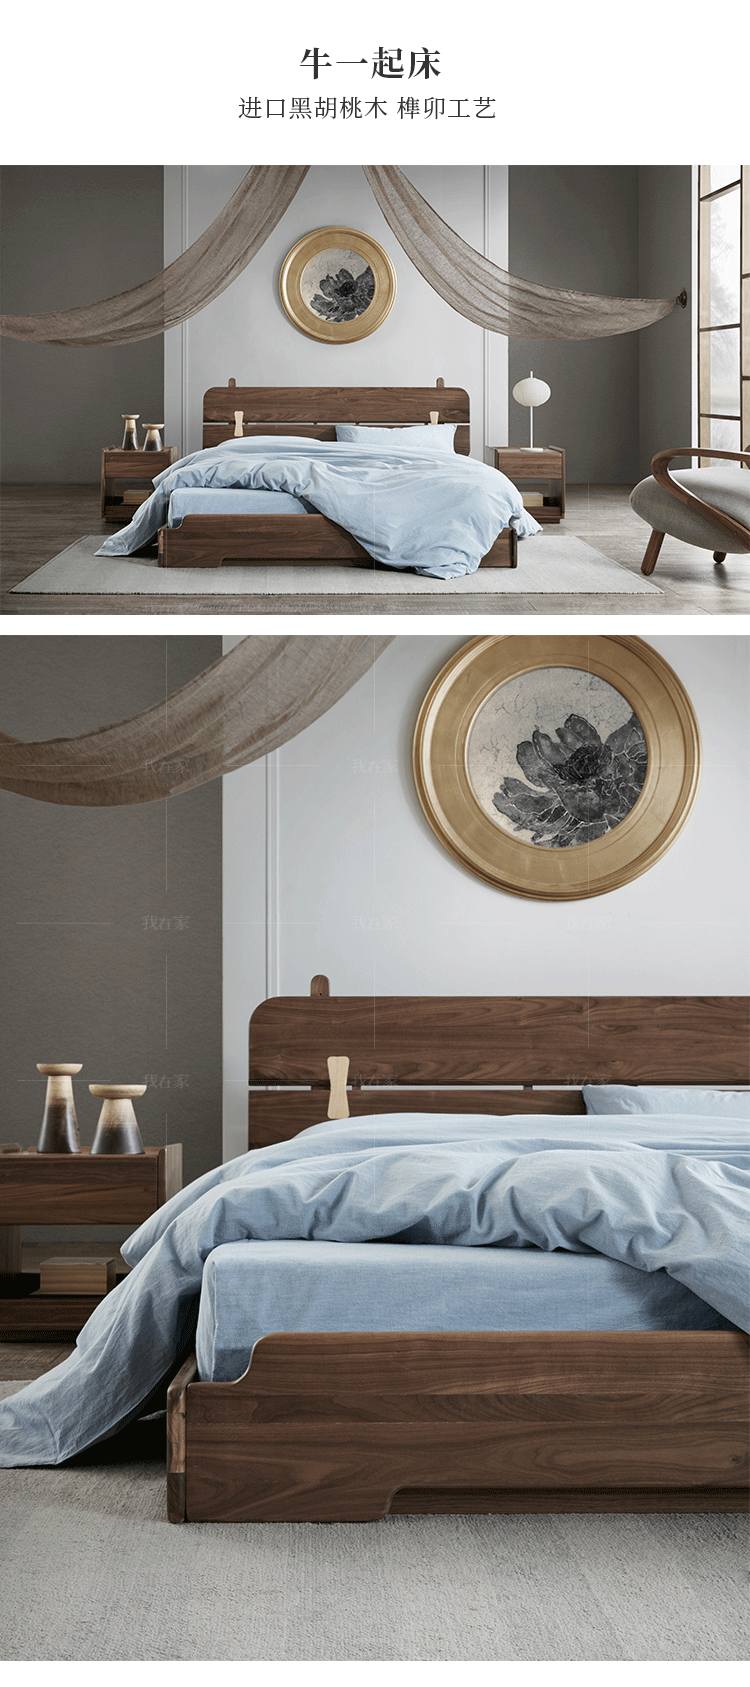 新中式风格牛一起床的家具详细介绍